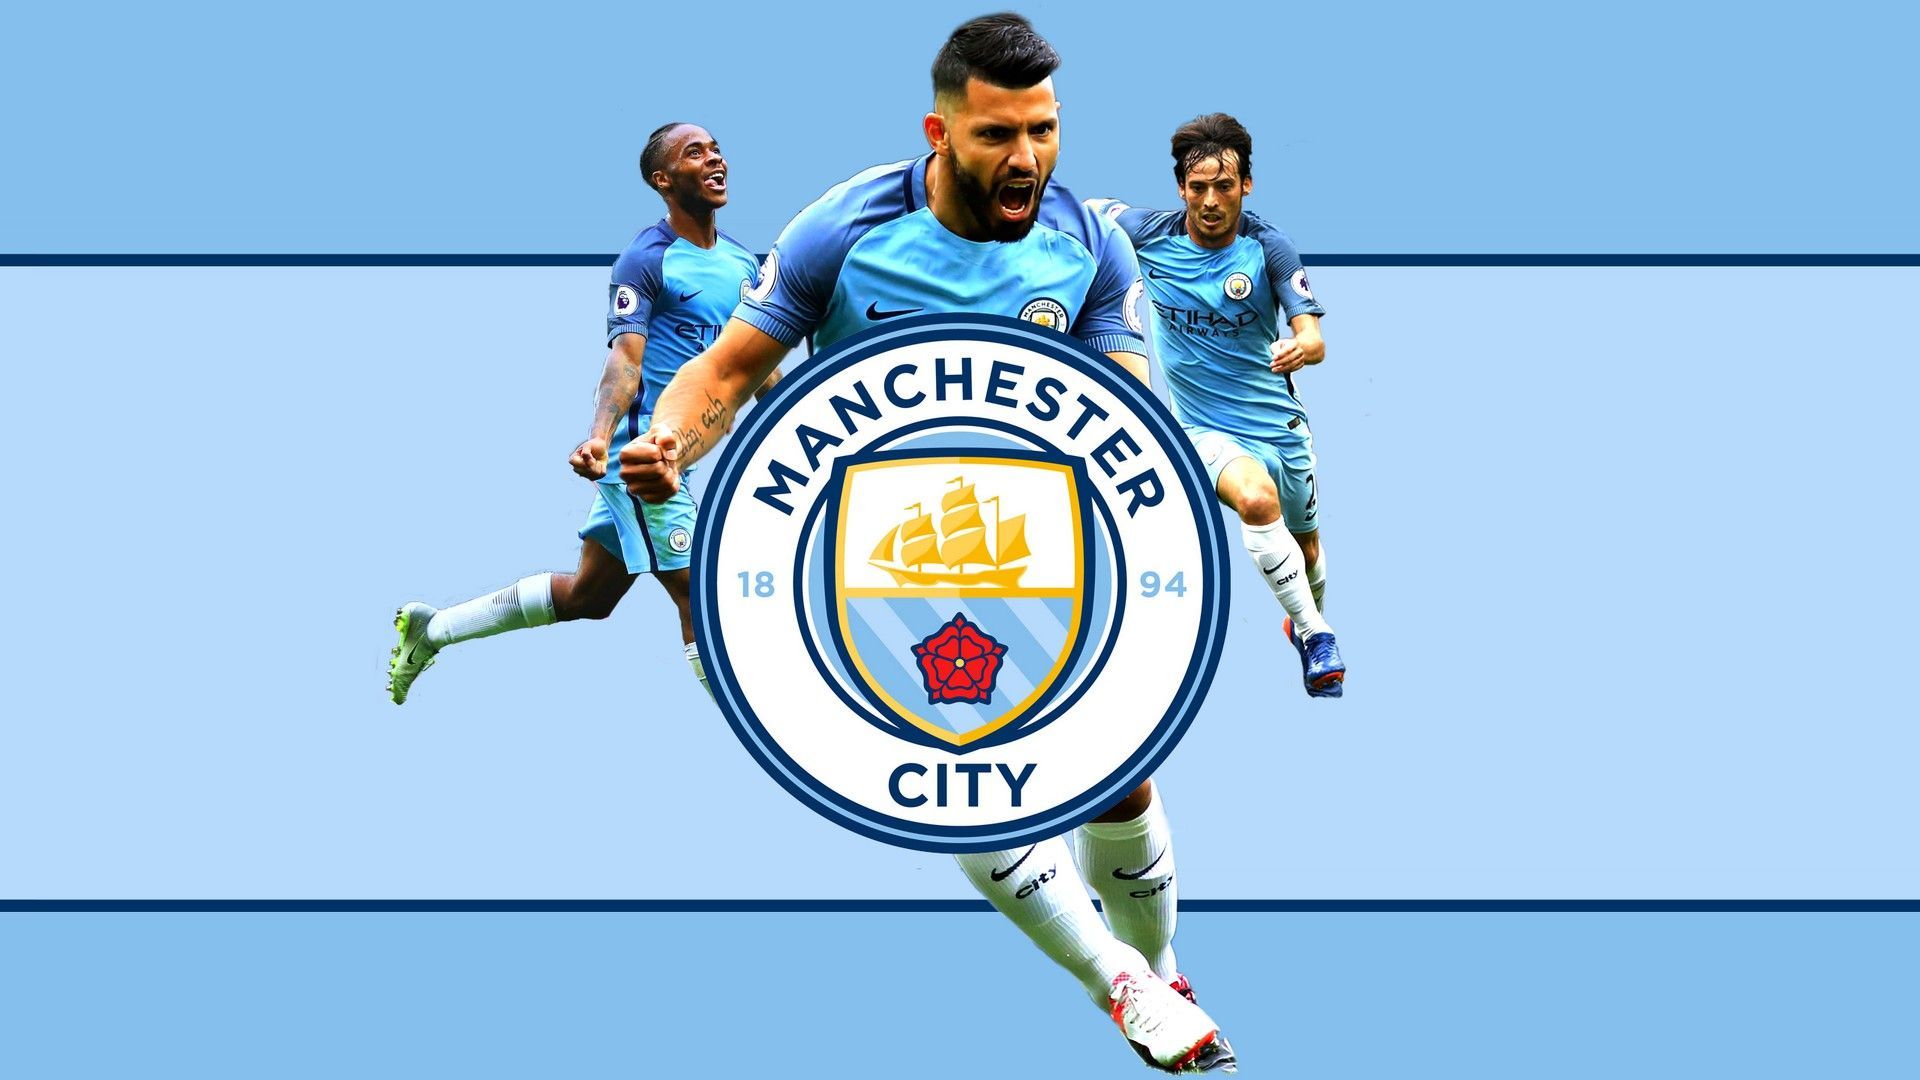 HD Manchester City Wallpaper. Manchester city wallpaper